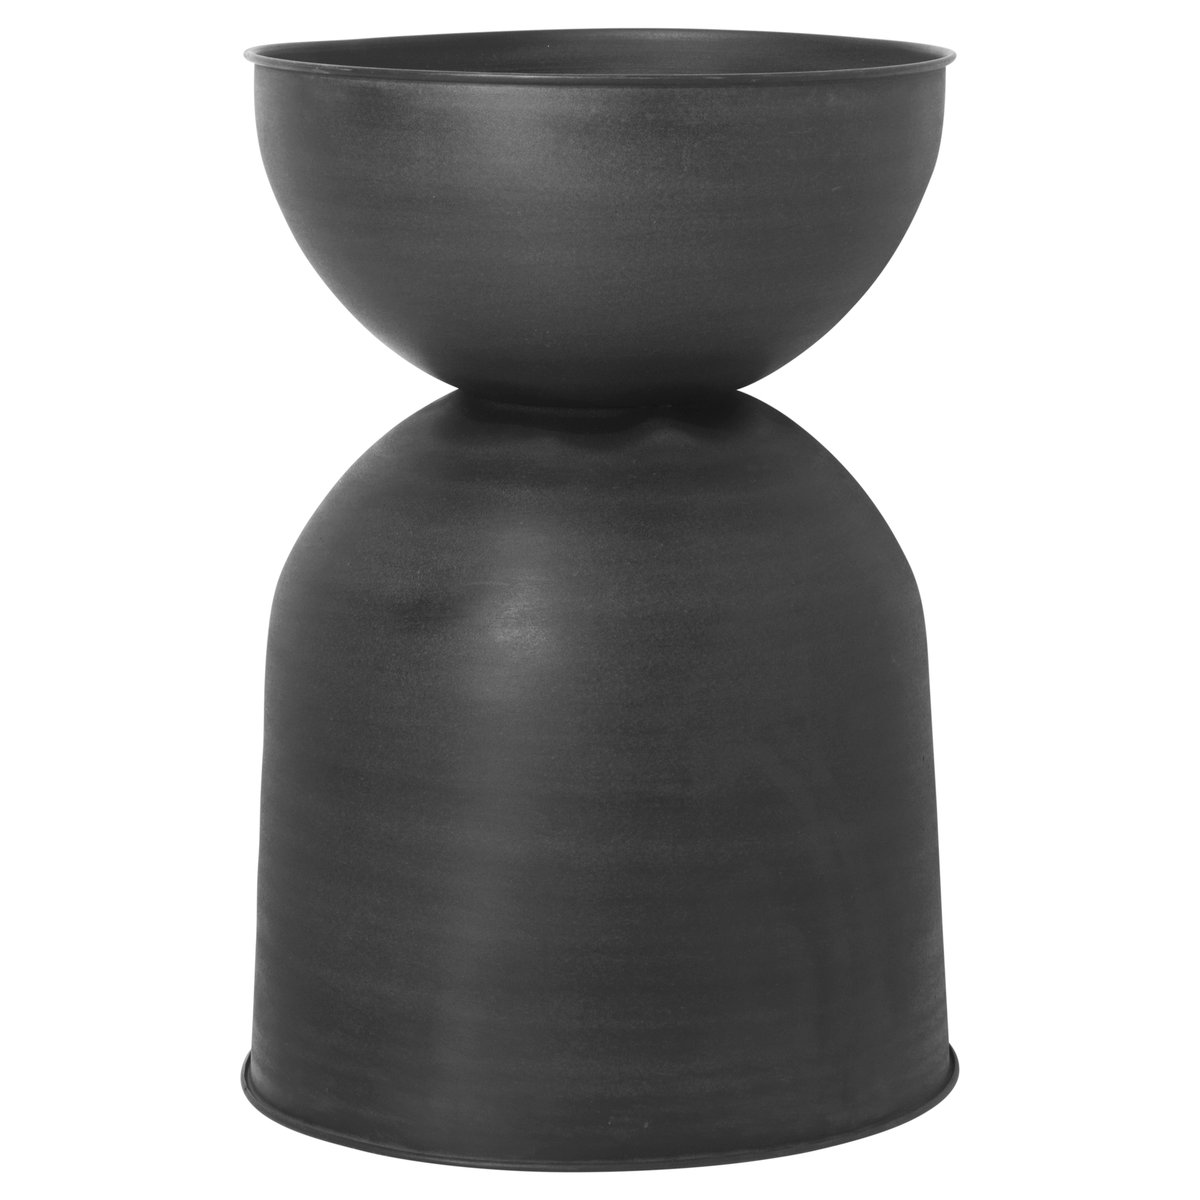 Zdjęcia - Doniczka ferm LIVING Hourglass , duża Ø50 cm Black-dark grey